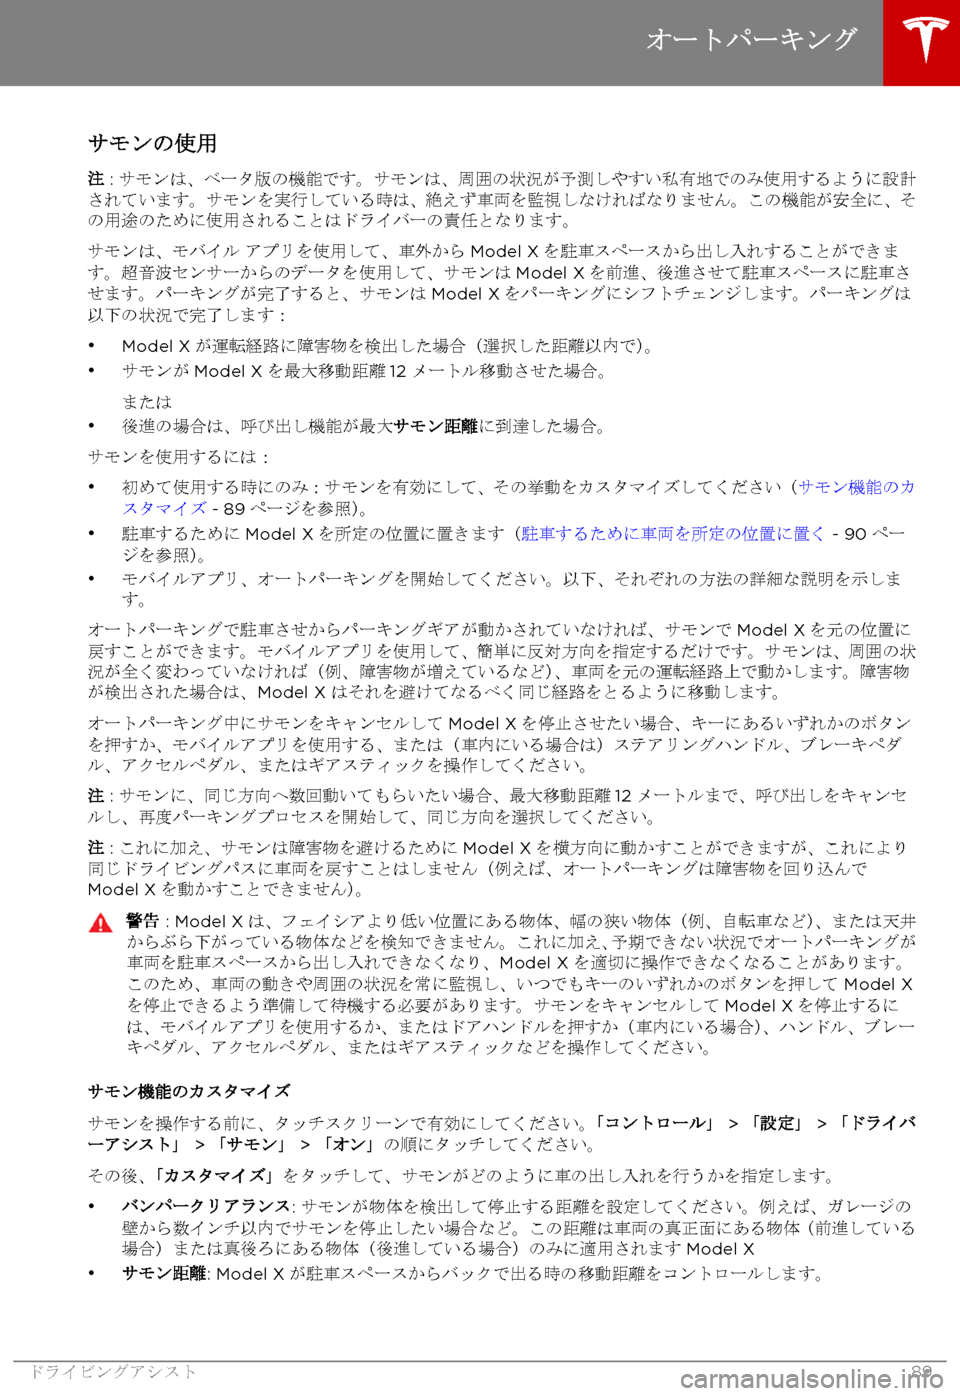 TESLA MODEL X 2017  取扱説明書 (in Japanese) 